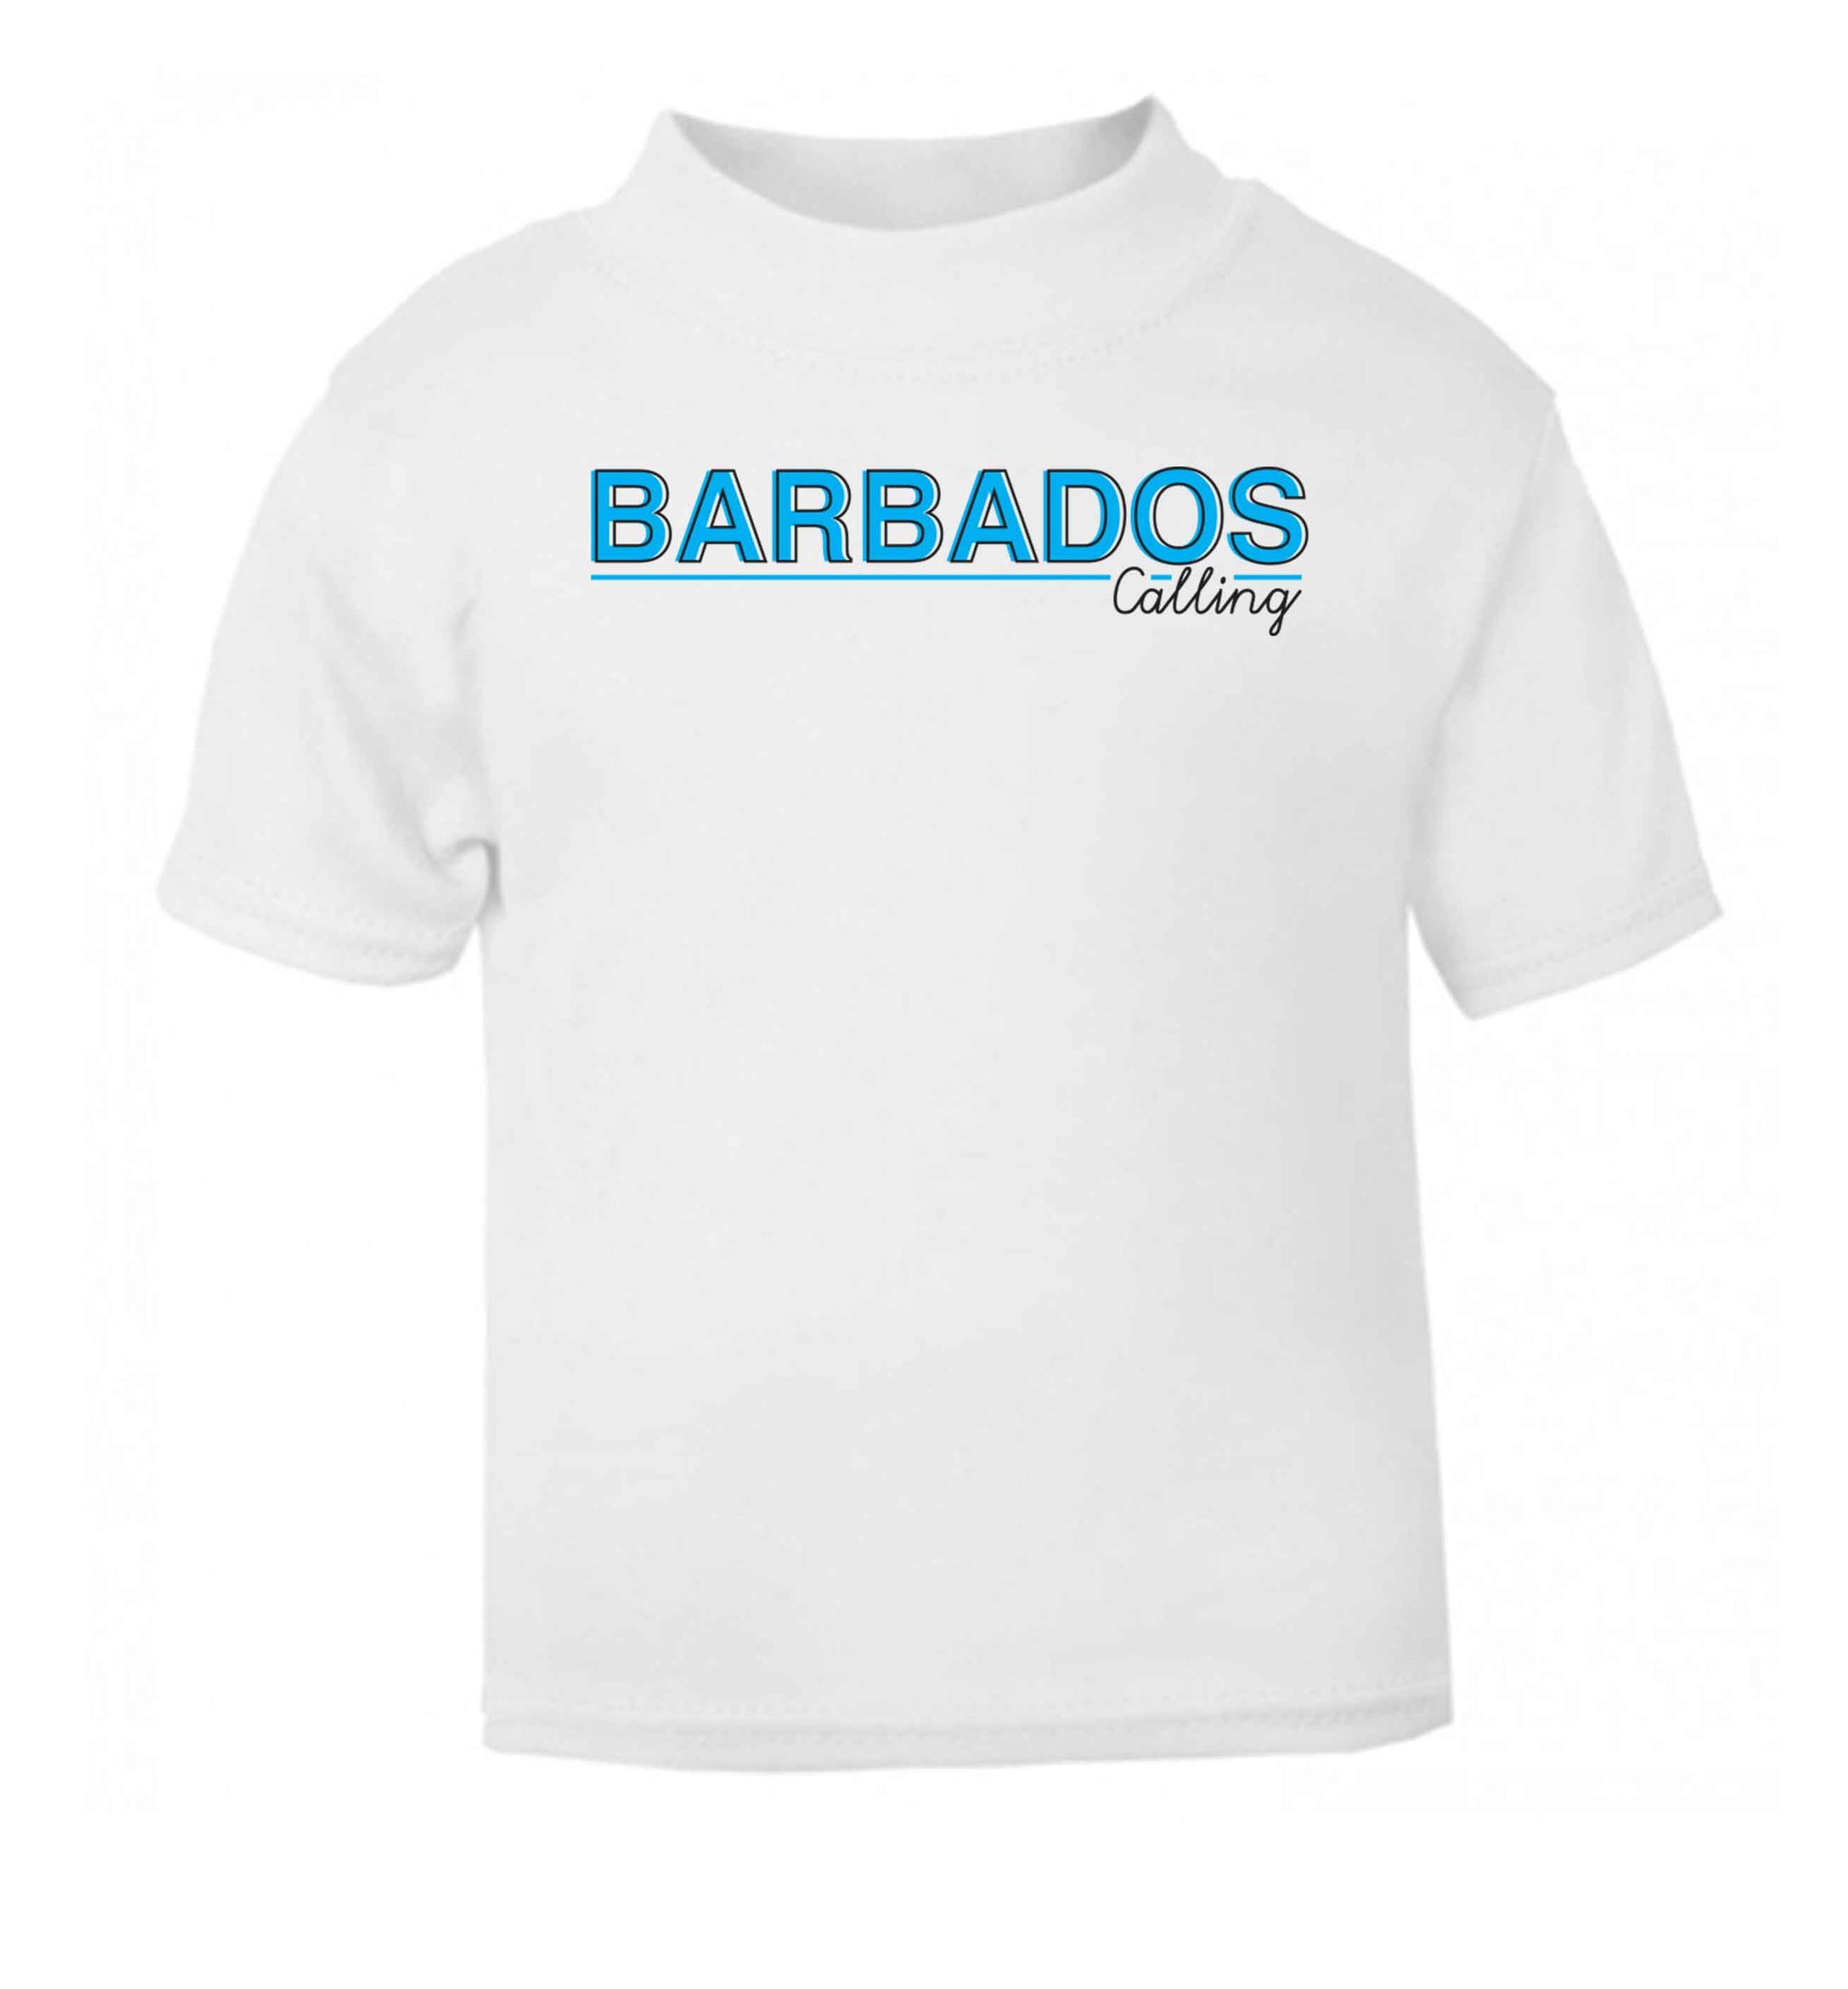 Barbados calling white Baby Toddler Tshirt 2 Years